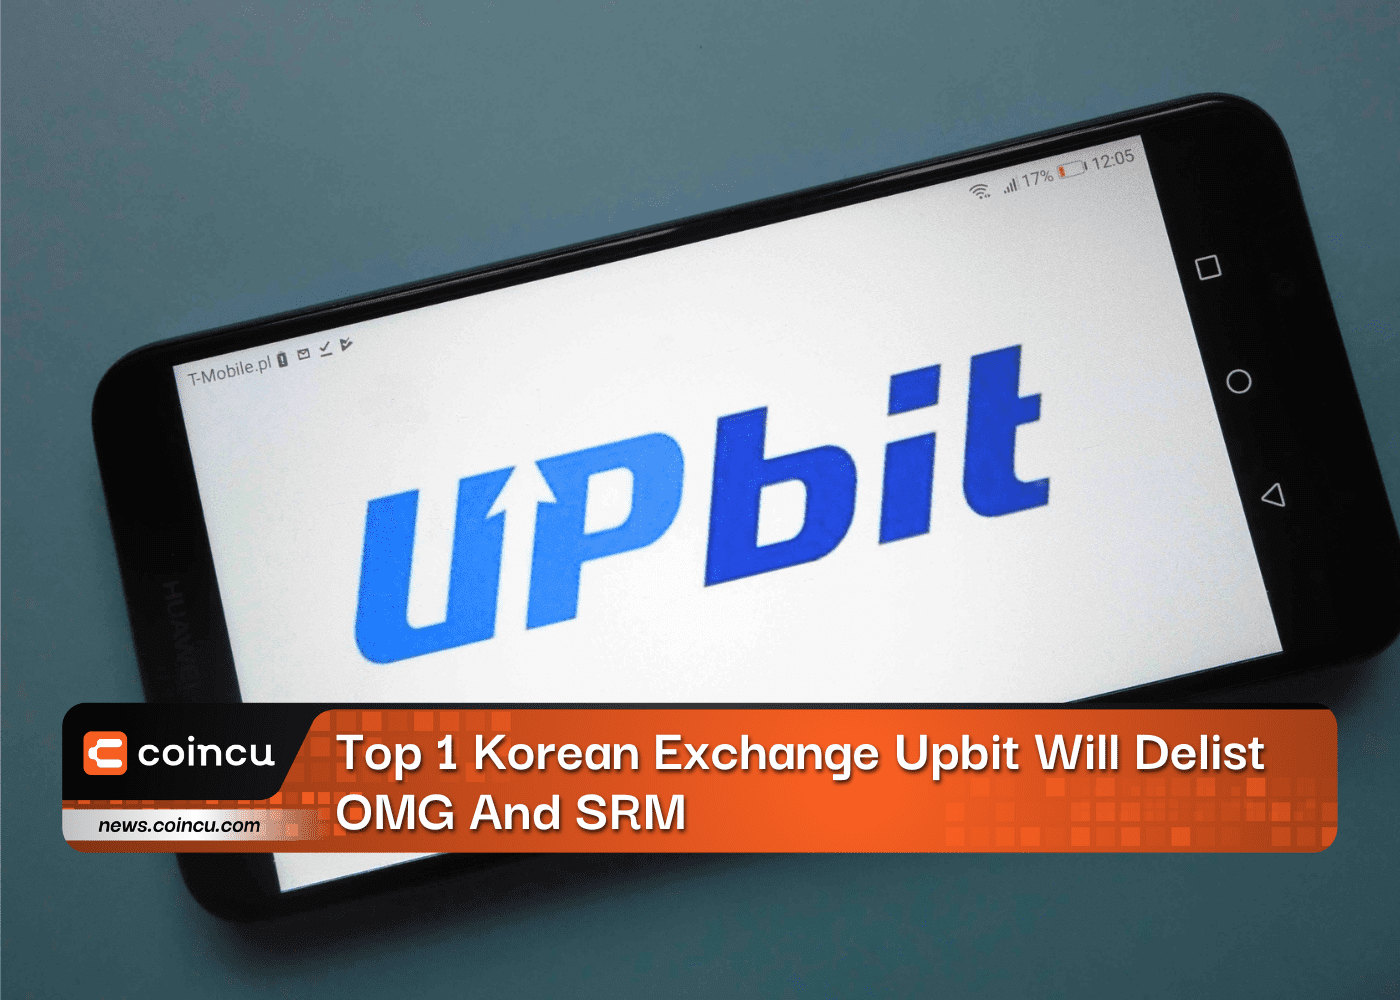 Top 1 Korean Exchange Upbit WTop 1 Korean Exchange Upbit Will Delist OMG And SRMill Delist OMG And SRM